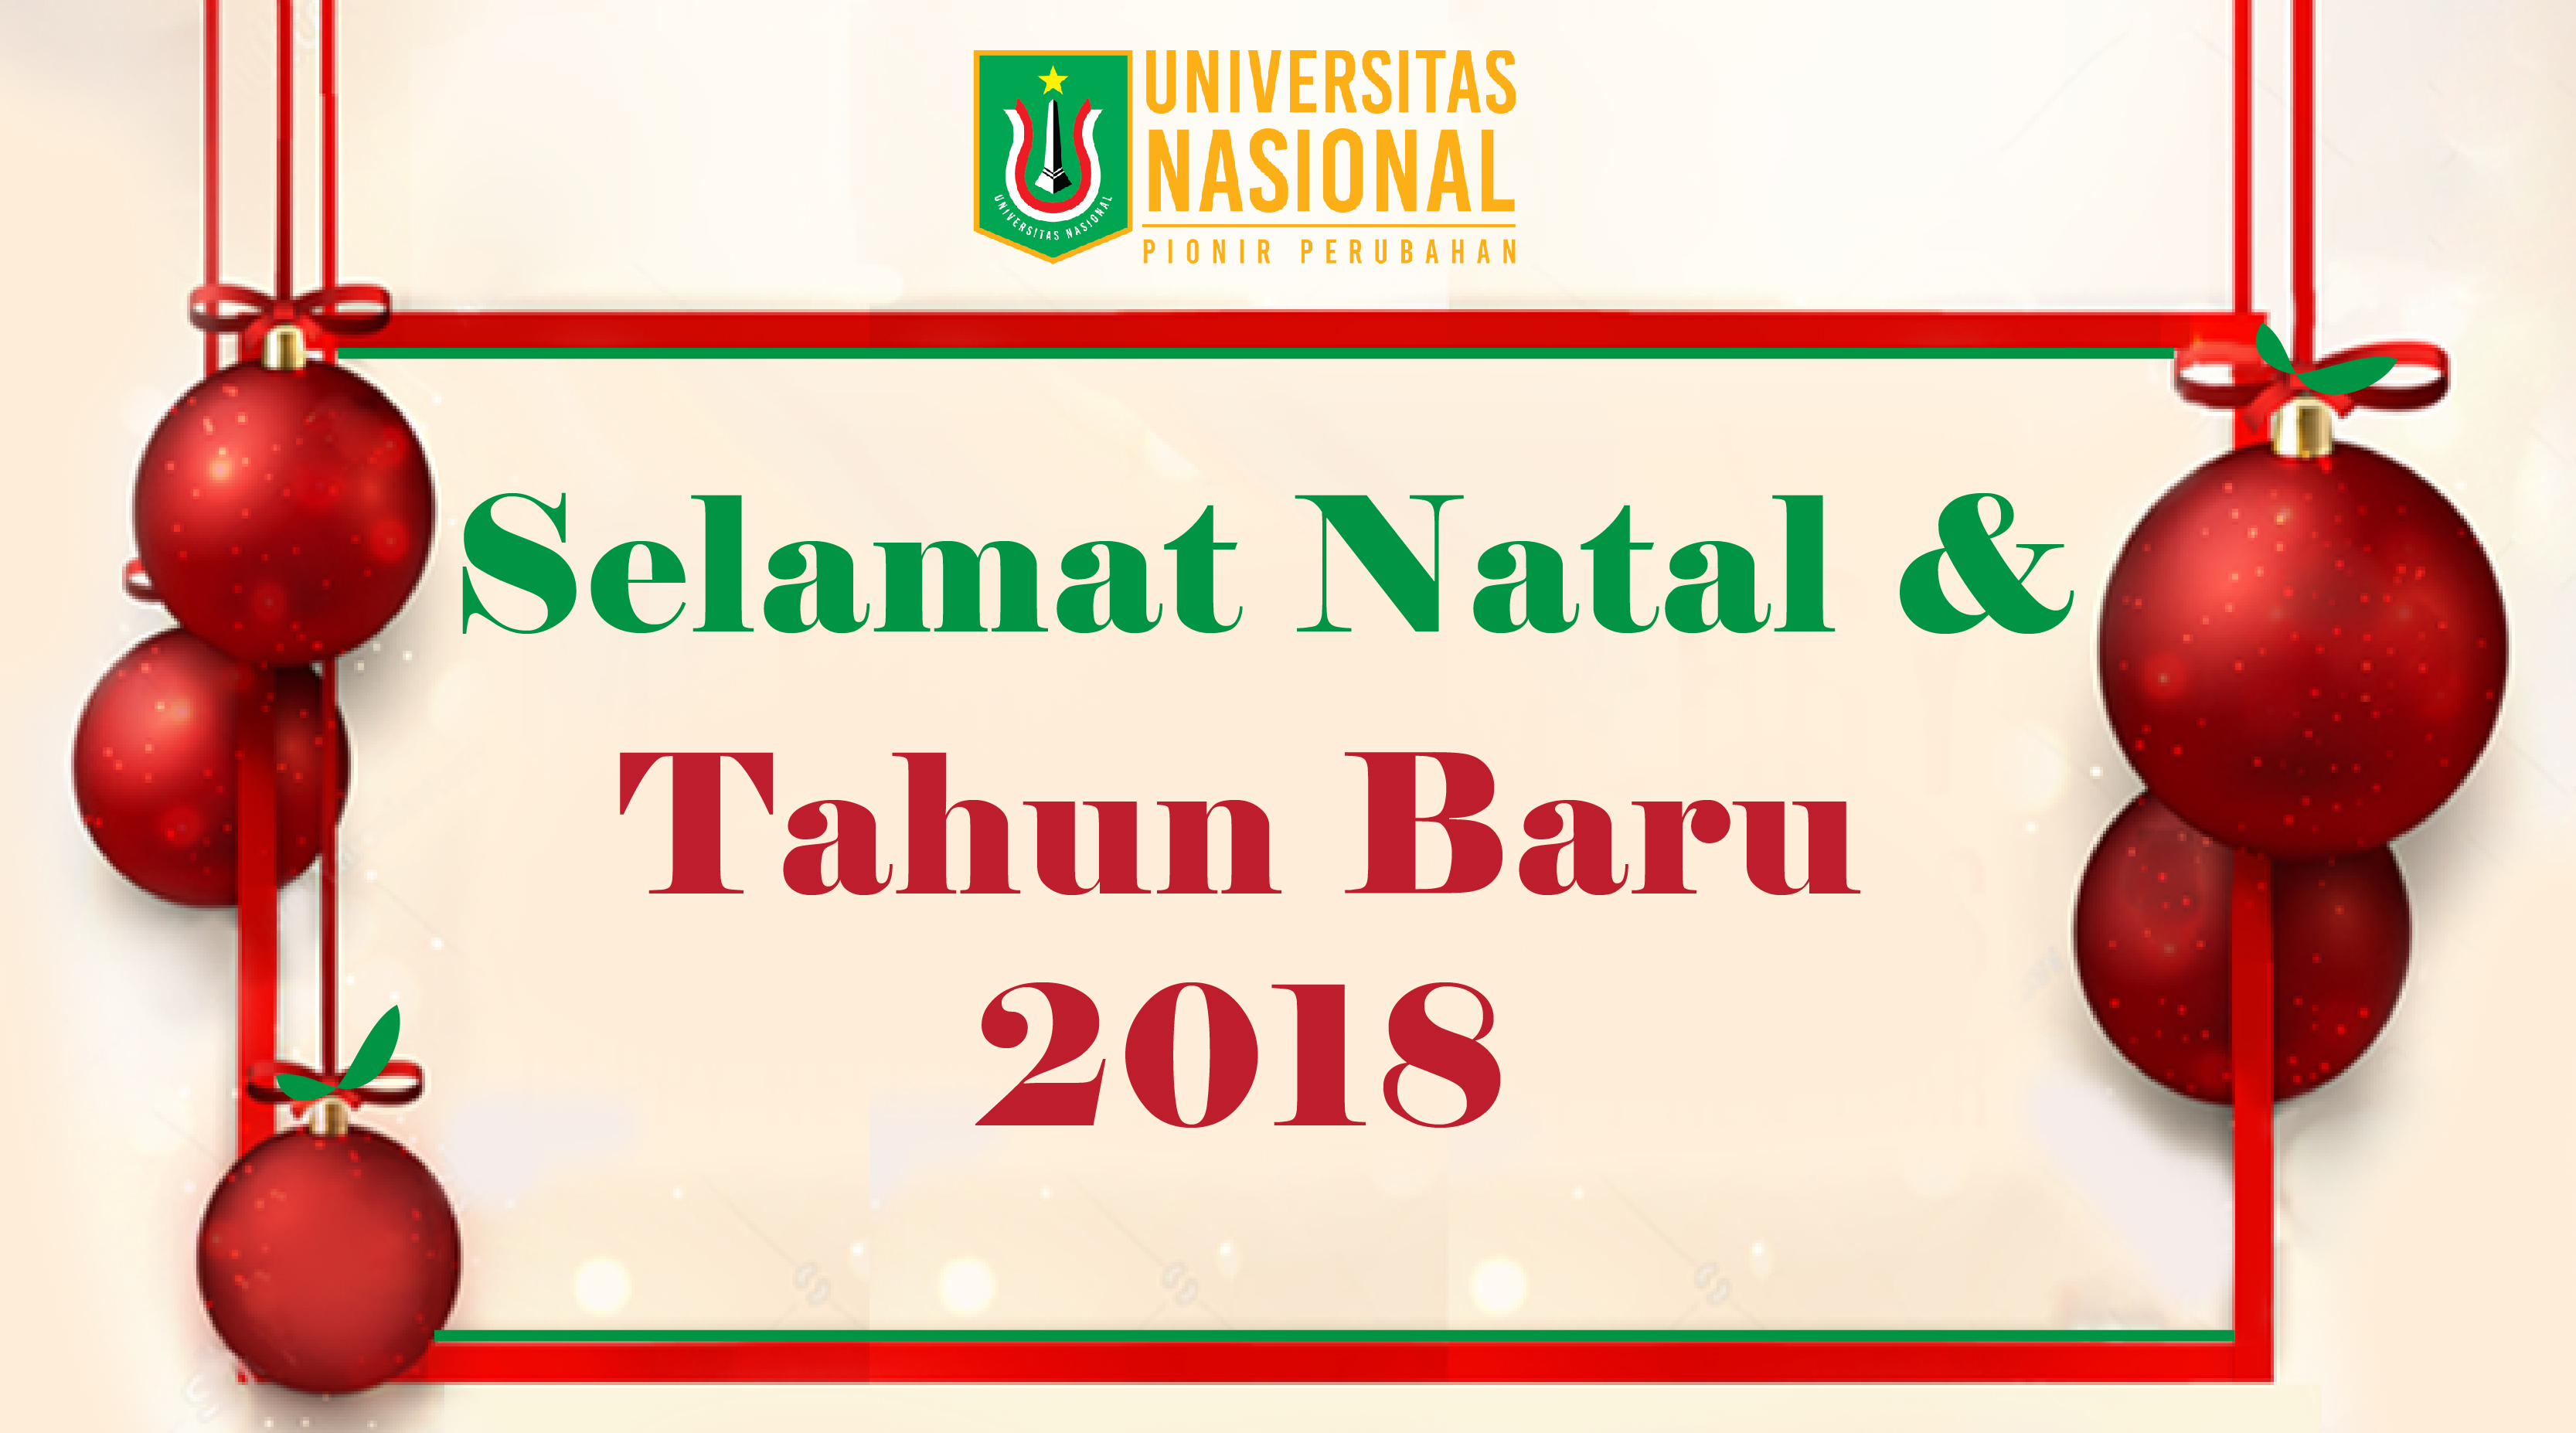 SELAMAT NATAL & TAHUN BARU 2018 – Universitas Nasional